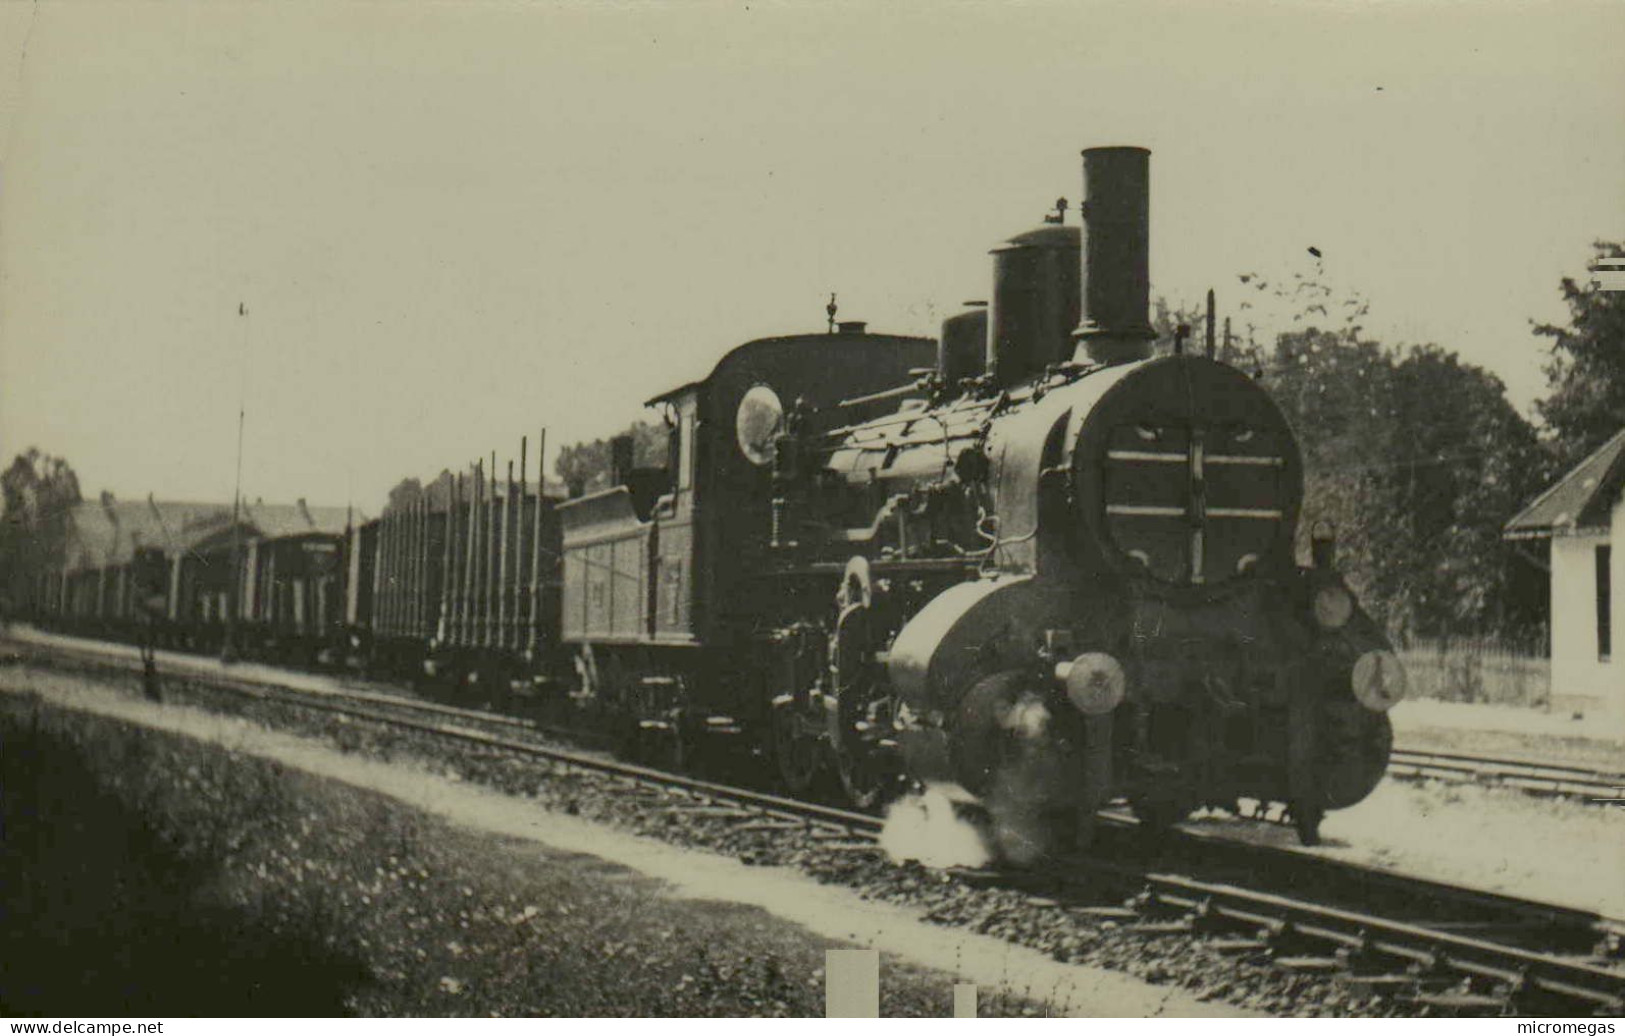 Reproduction - Hongrie - Locomotive à Identifier - Eisenbahnen